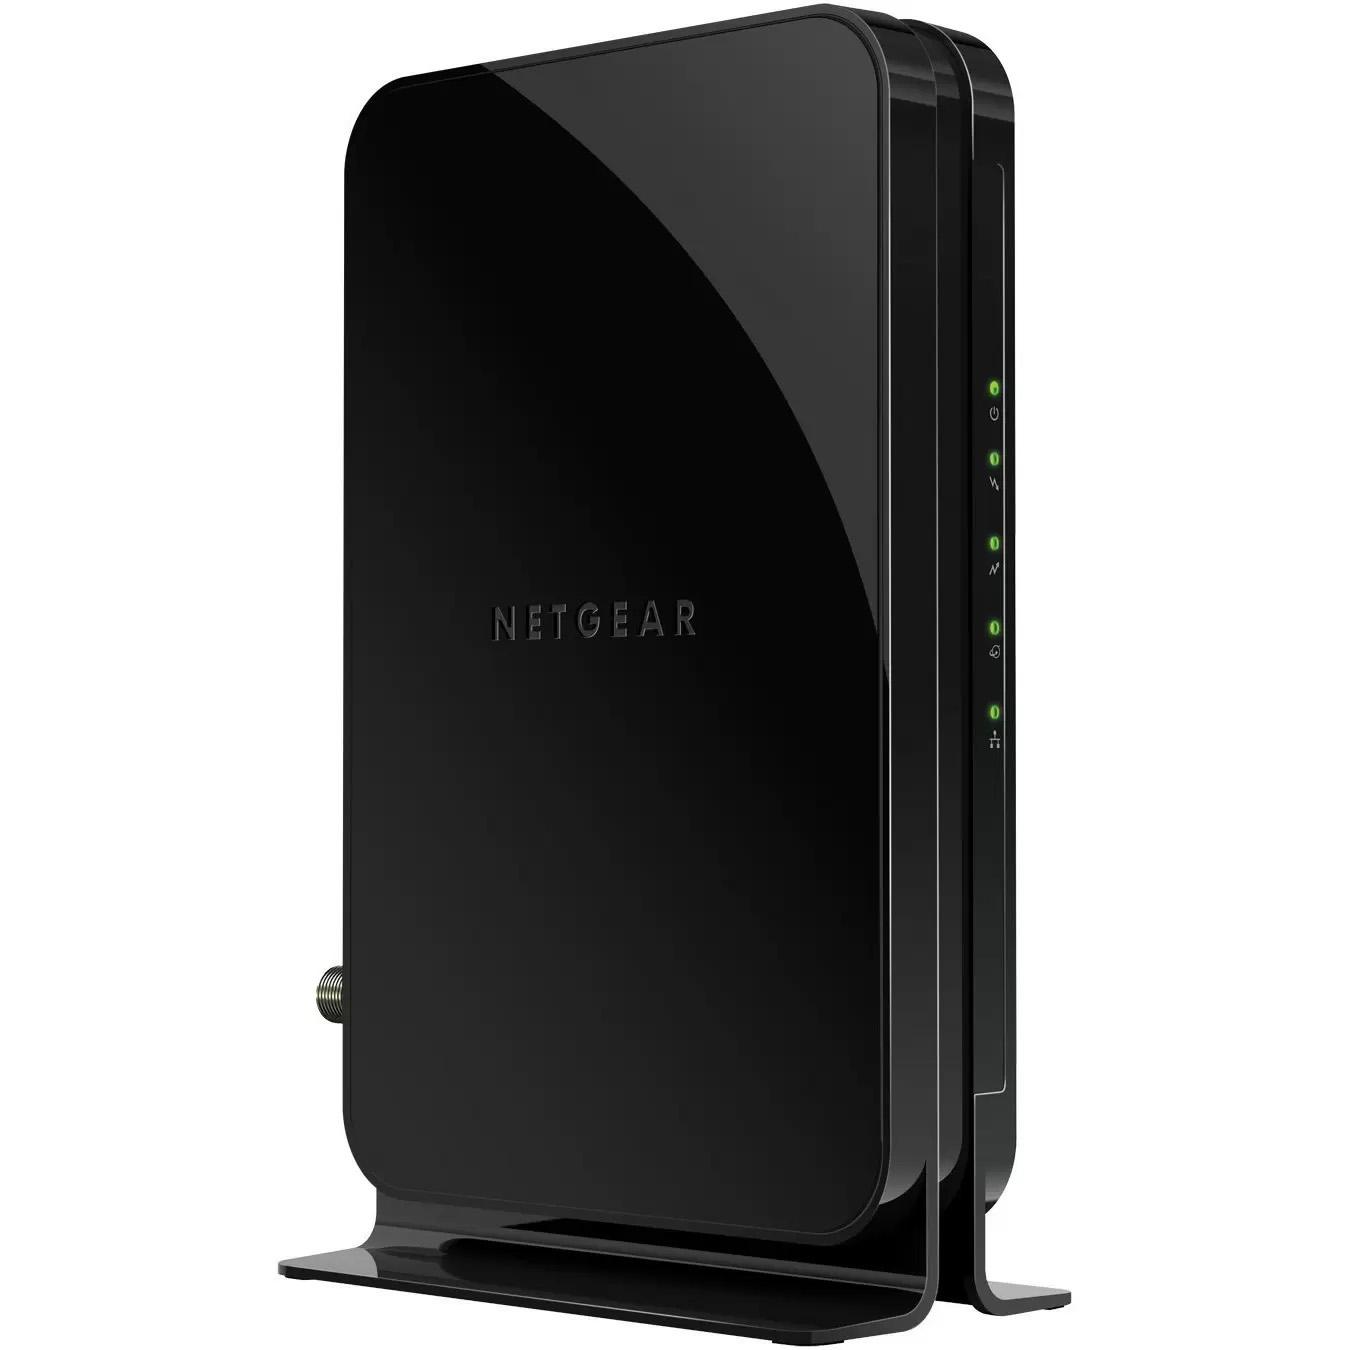 Netgear CM500 DOCSIS 3.0 Cable Modem for $16.12